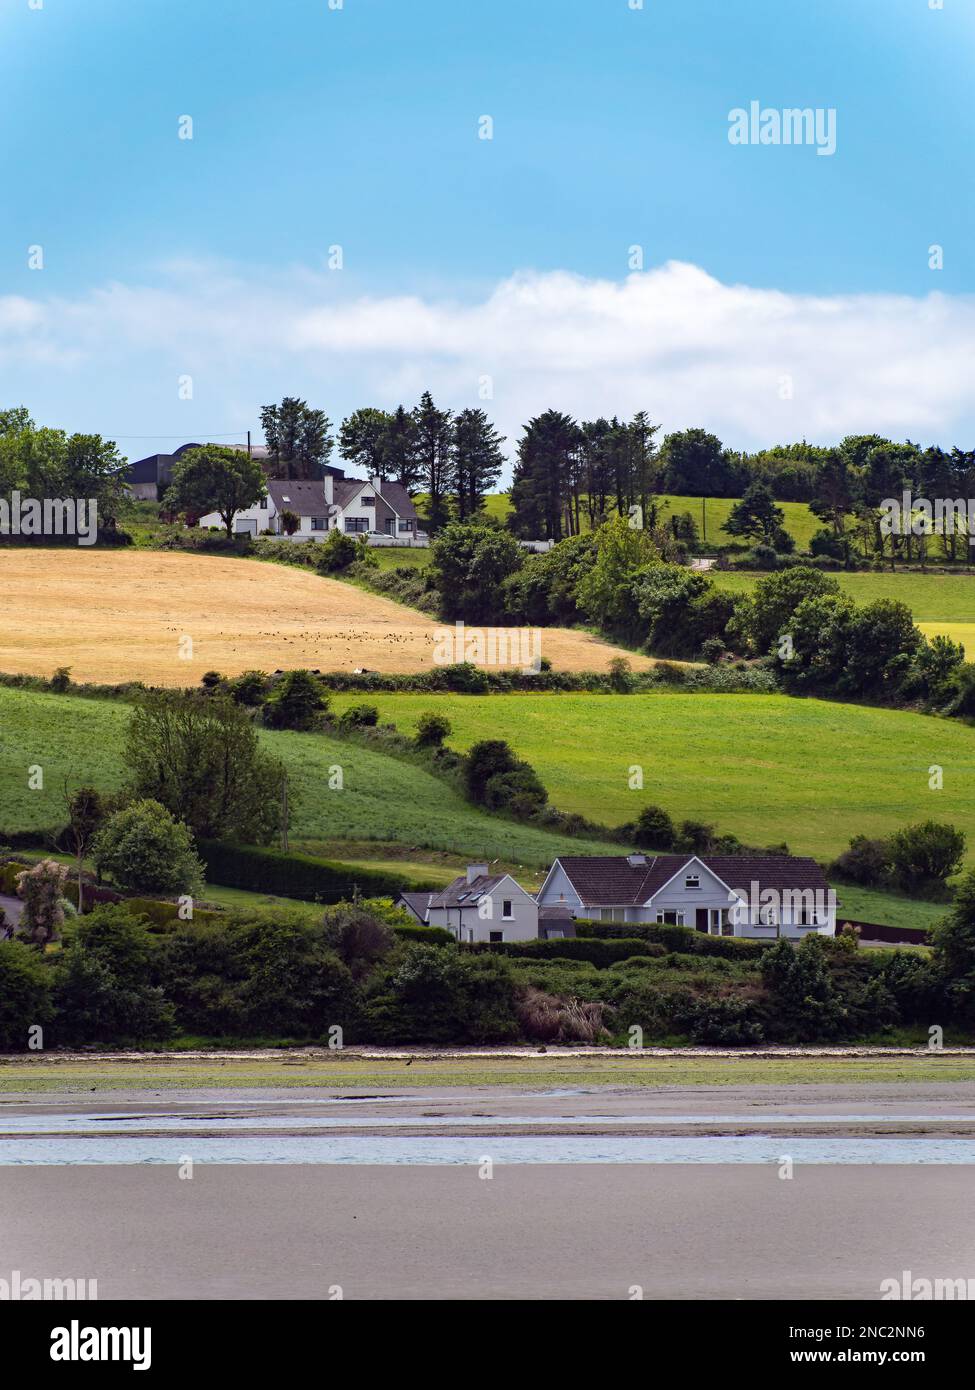 Mehrere Gebäude und Bäume auf einem Hügel. Irische Landschaft. Malerische Landschaft. Bauernfelder unter blauem Himmel, Haus auf grünem Grasfeld. Stockfoto